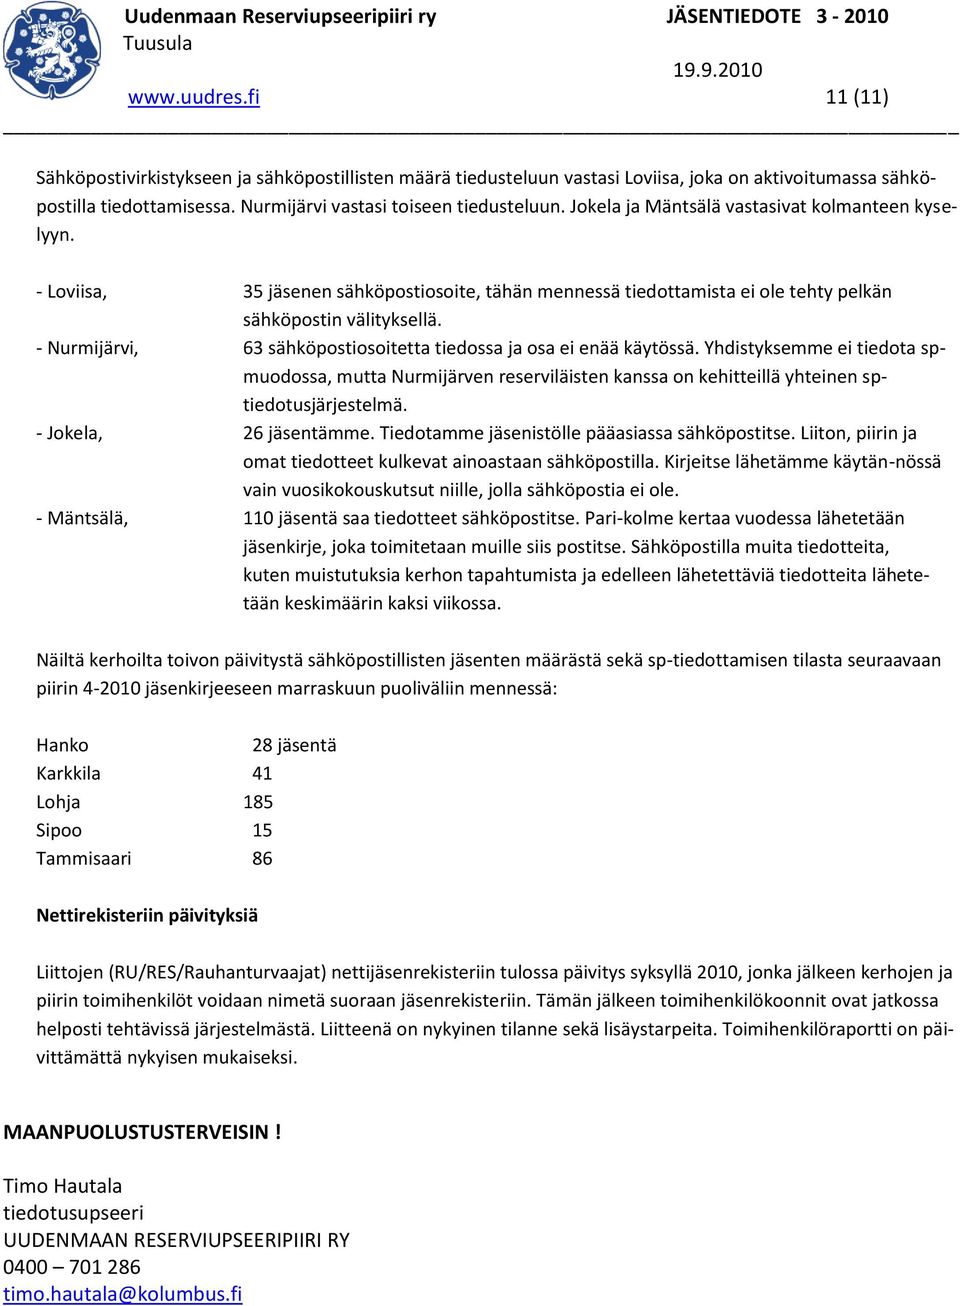 - Nurmijärvi, 63 sähköpostiosoitetta tiedossa ja osa ei enää käytössä. Yhdistyksemme ei tiedota spmuodossa, mutta Nurmijärven reserviläisten kanssa on kehitteillä yhteinen sptiedotusjärjestelmä.